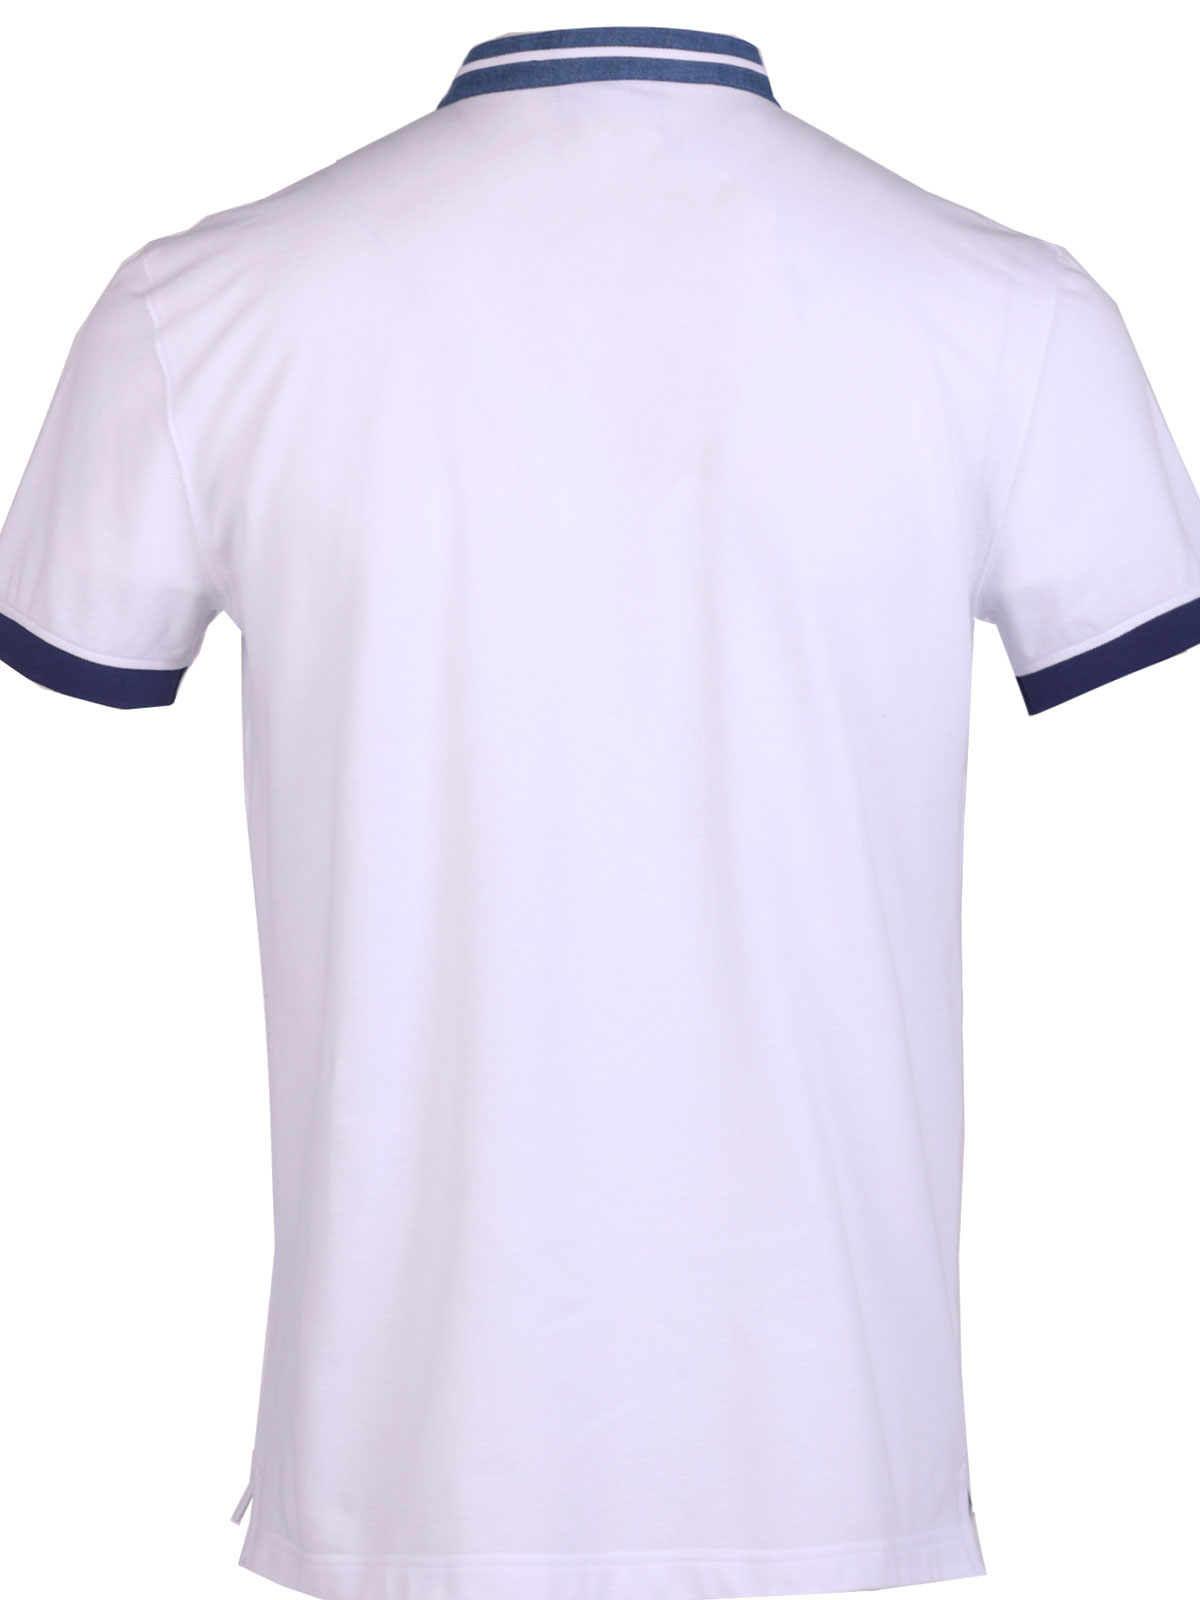 Bluză albă cu mâneci scurte - 93439 € 40.49 img2